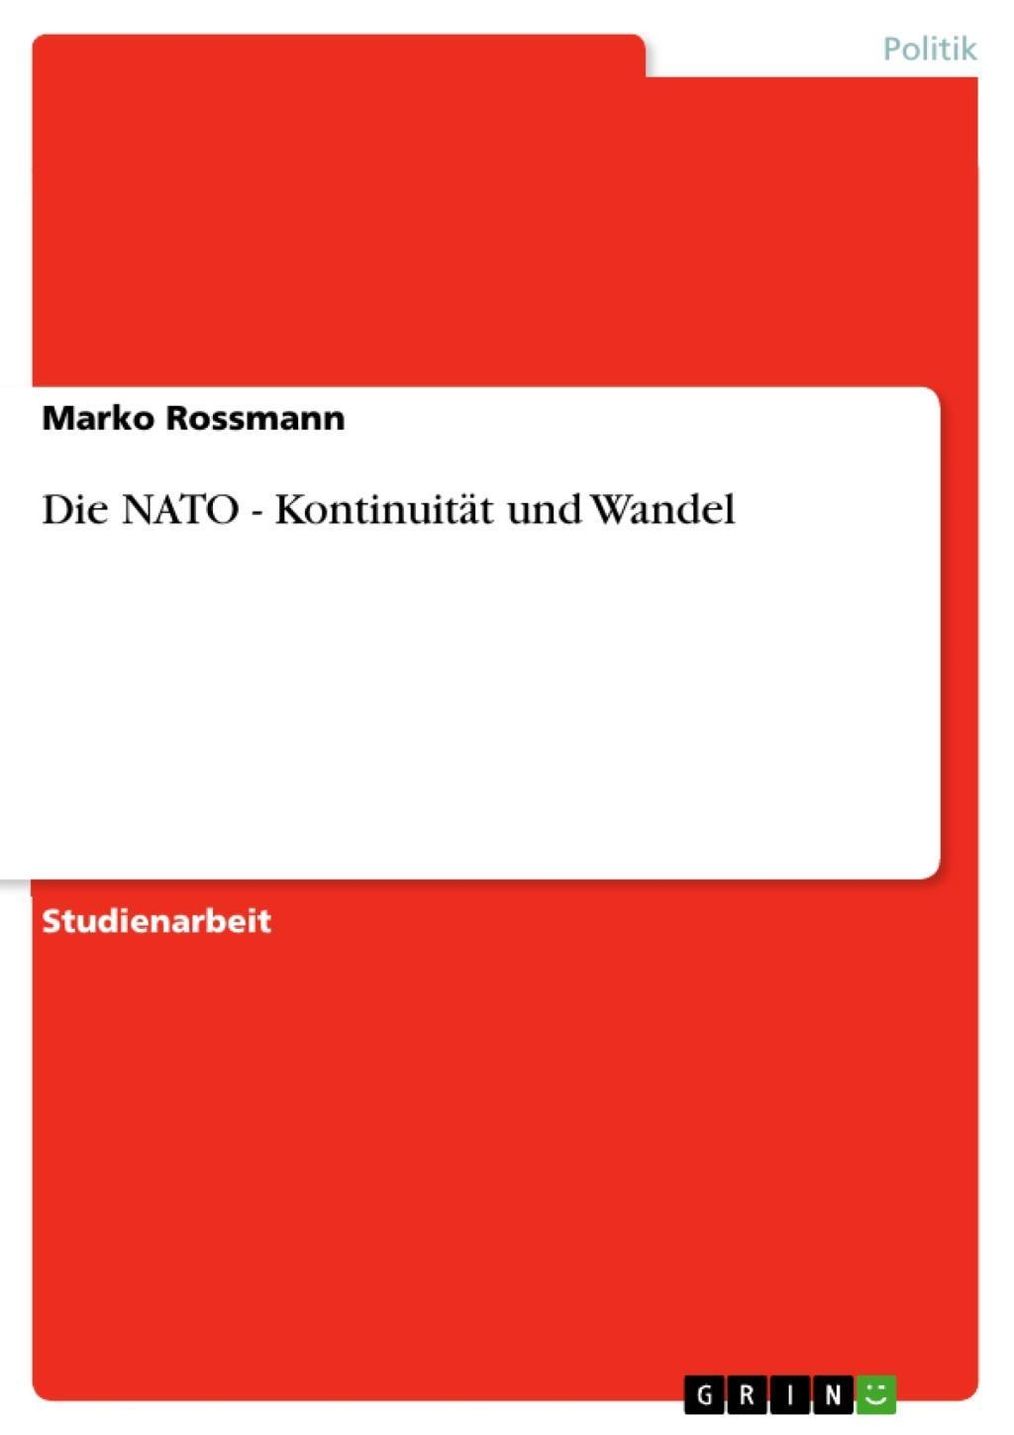 Die NATO - Kontinuität und Wandel eBook v. Marko Rossmann | Weltbild